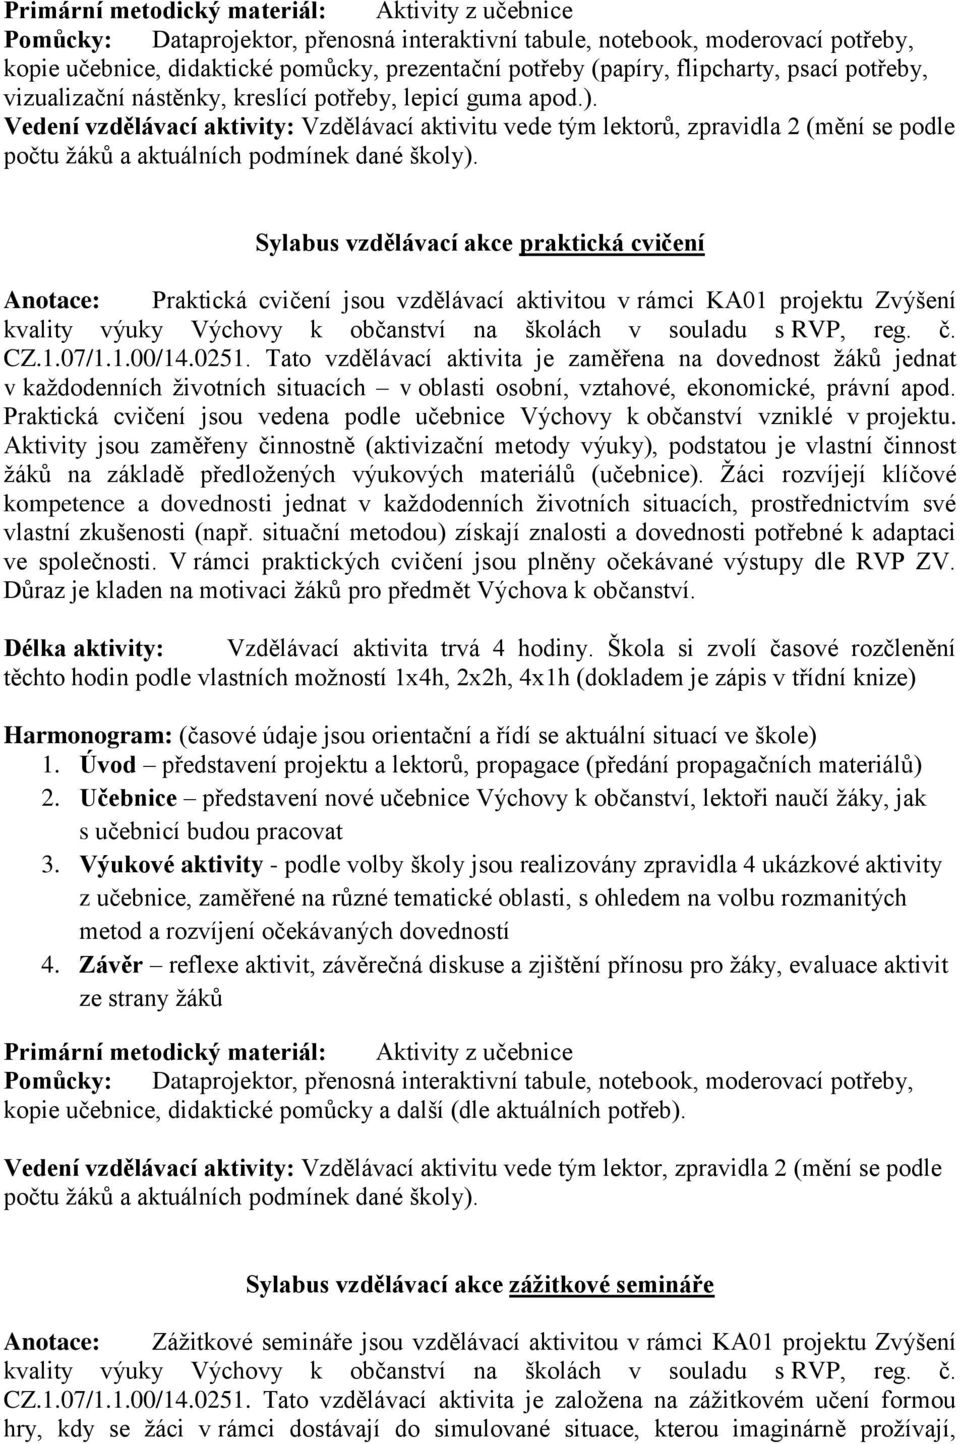 KA01 projektu Zvýšení kvality výuky Výchovy k občanství na školách v souladu s RVP, reg. č. CZ.1.07/1.1.00/14.0251.